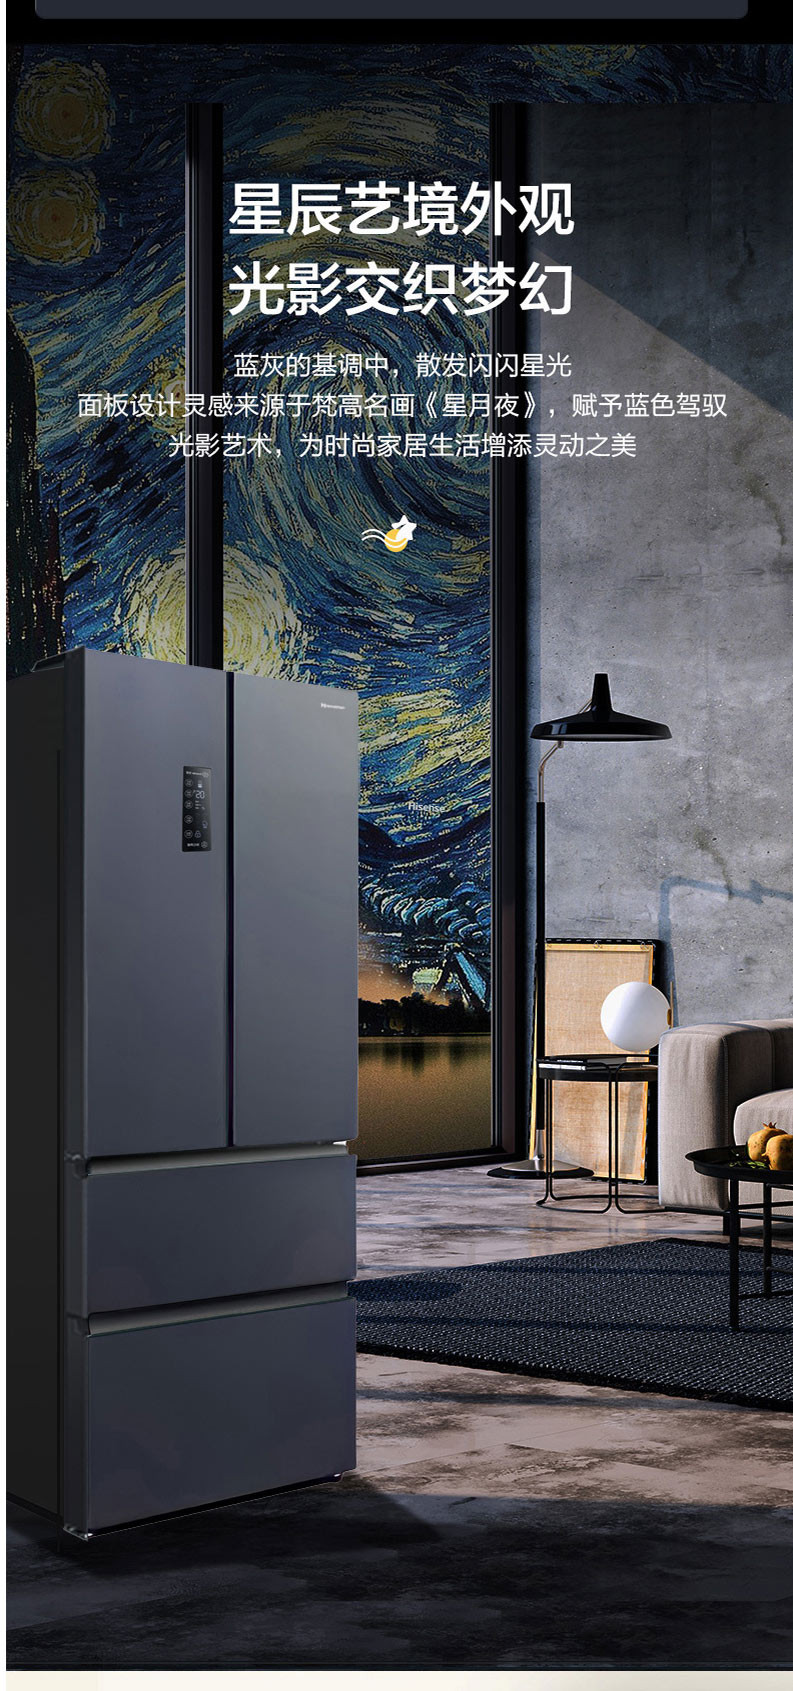 海信/Hisense BCD-452WNK1DPUJ 法式变频冰箱家用风冷无霜四门冰箱